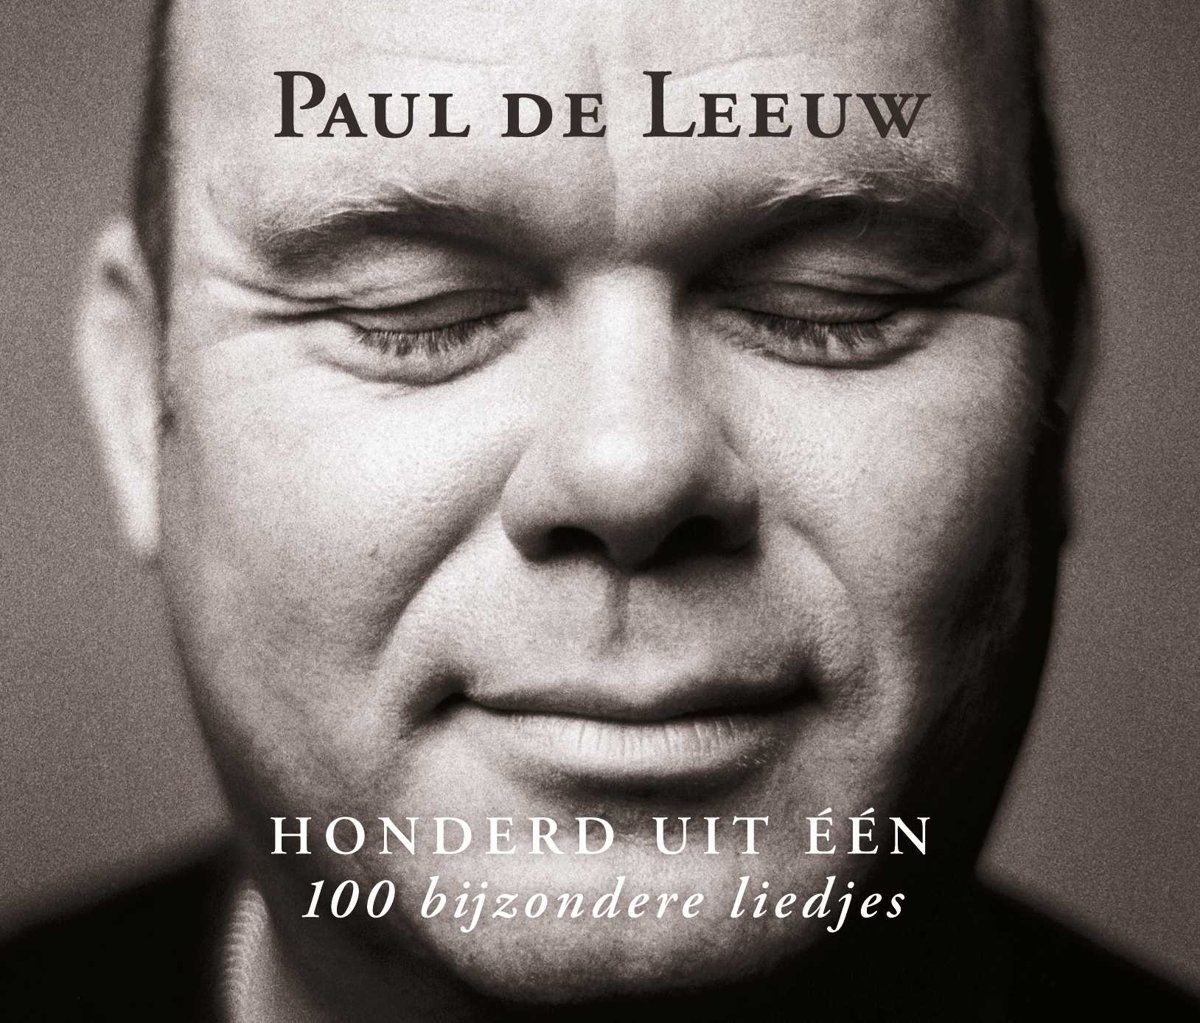 Bolcom Honderd Uit Een Paul De Leeuw Cd Album Muziek